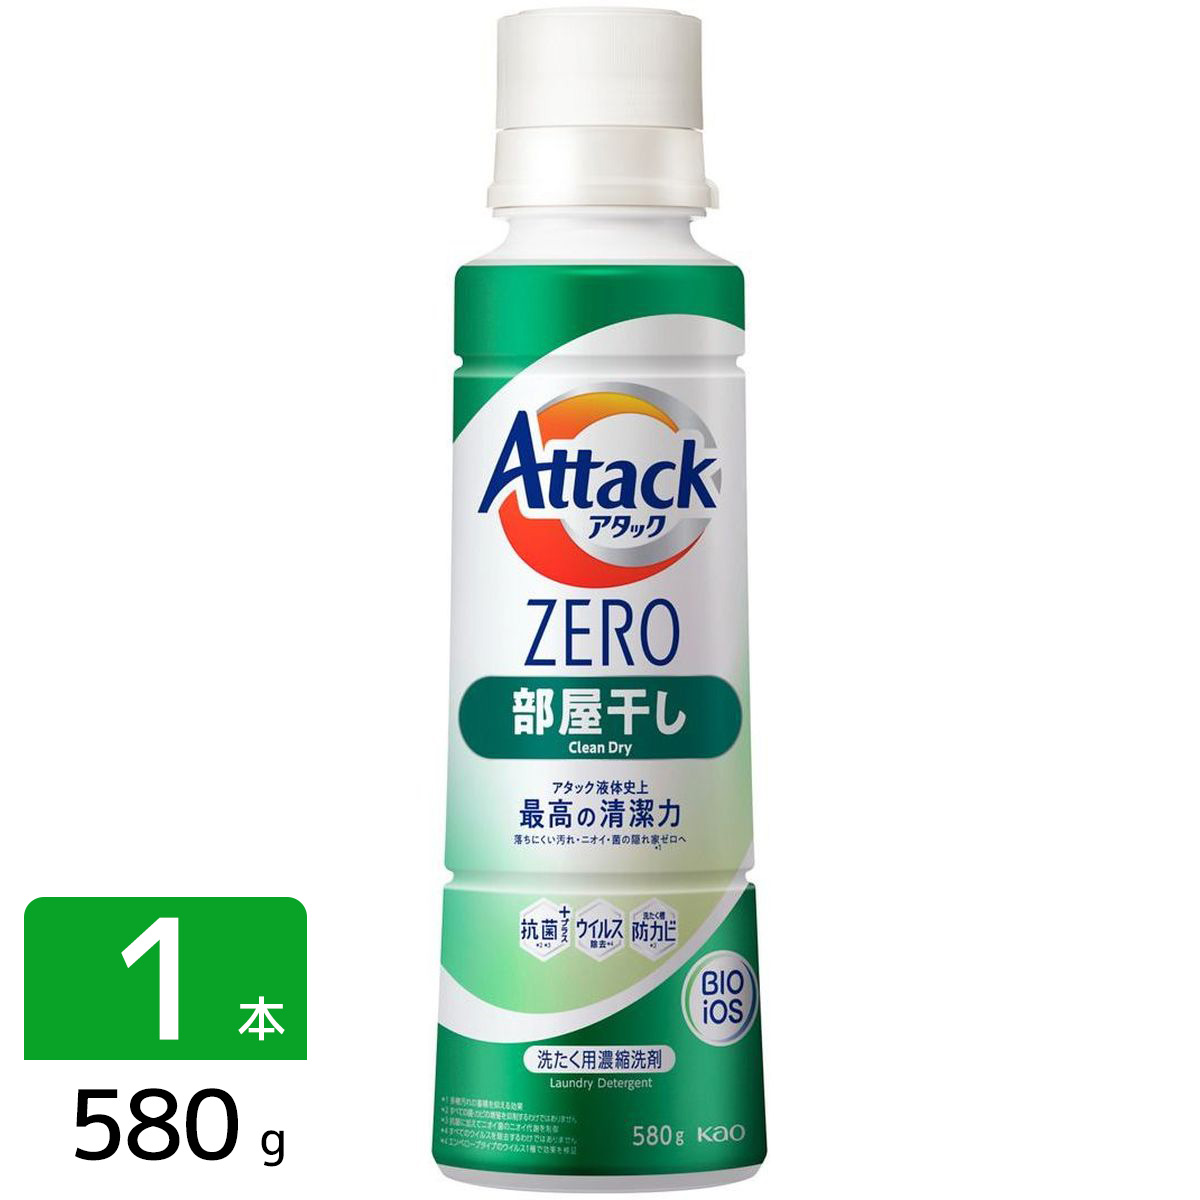 アタックZERO Attack ZERO 洗濯洗剤 部屋干し 本体 大サイズ 580 g